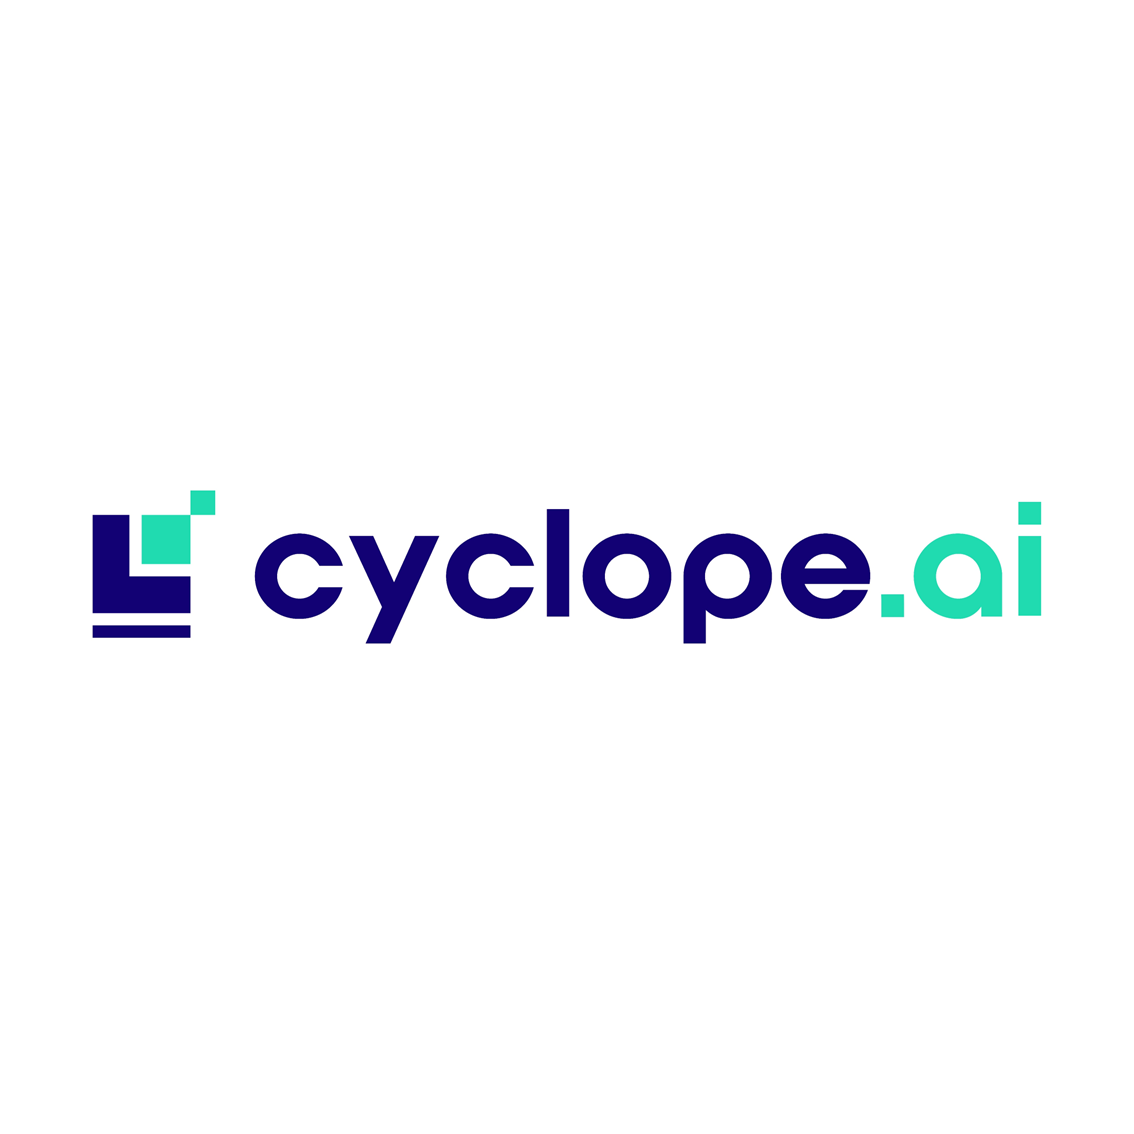 CYCLOPE.AI